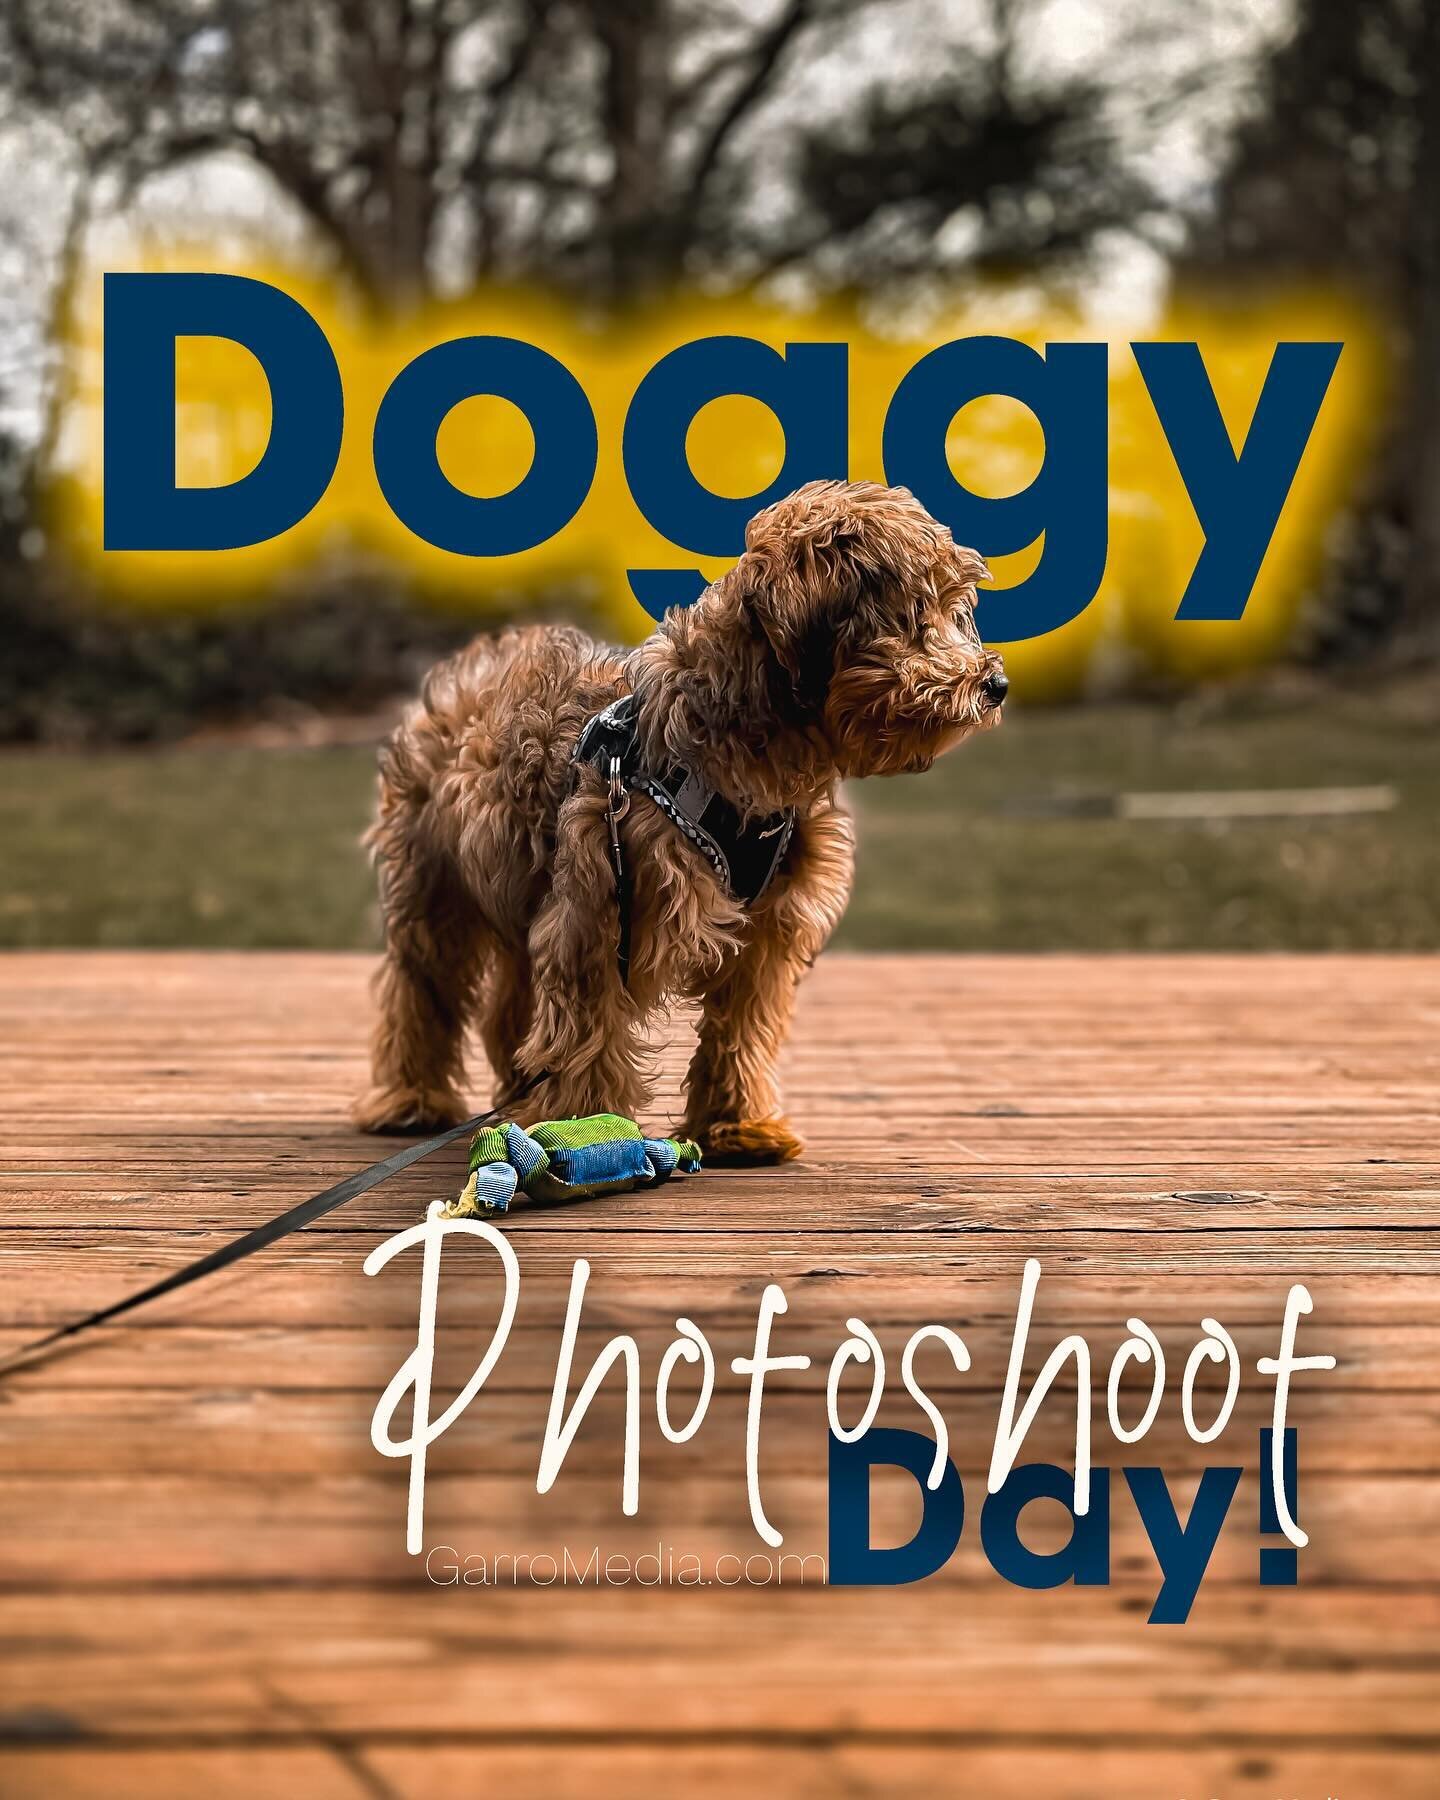 Doggy #photoshoot #doggy #photgraphy 
#dogs #photo 

.
.
.

@garromediagroup